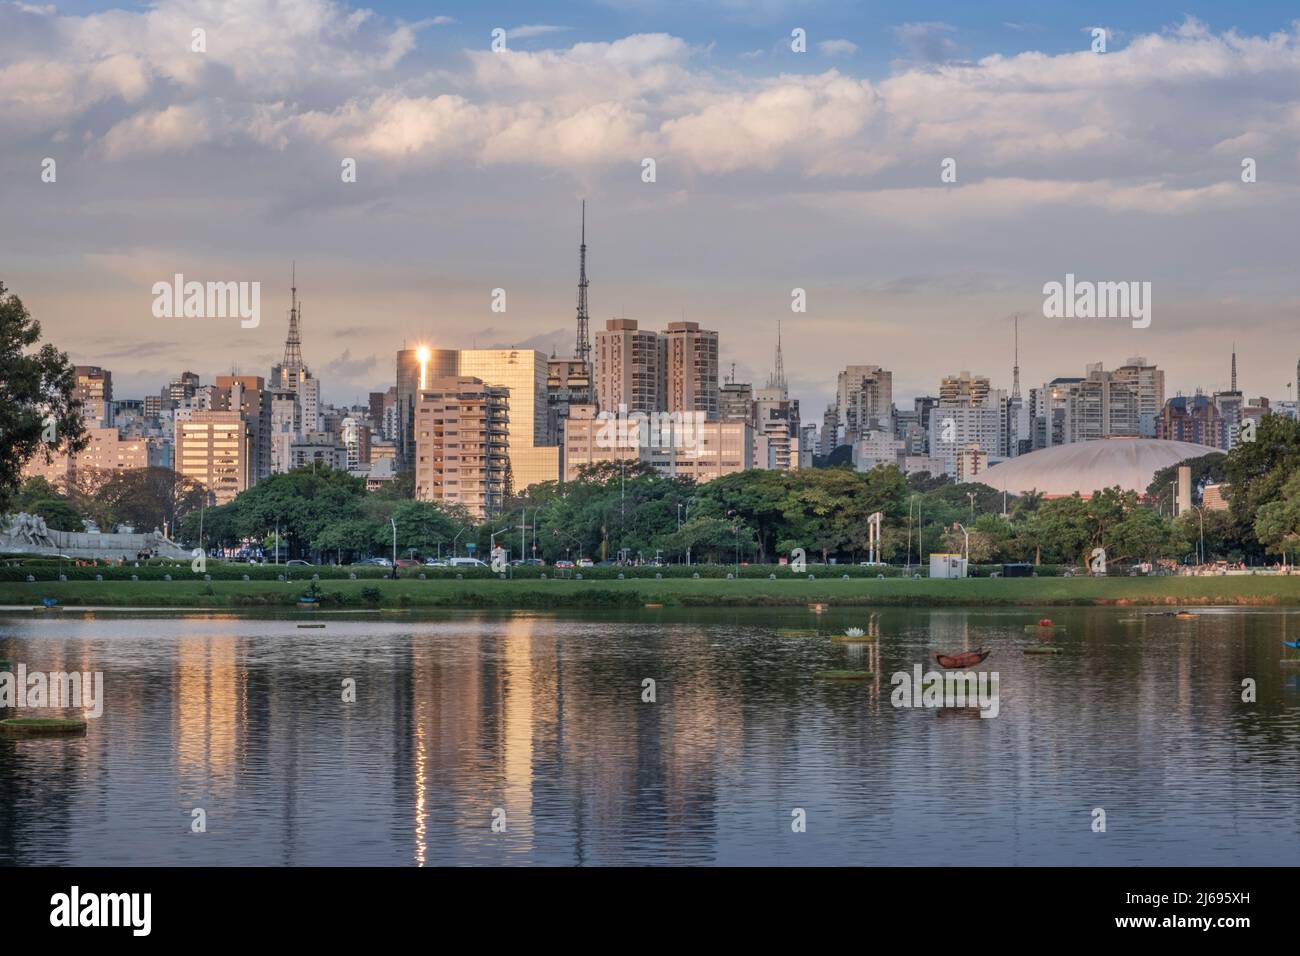 El horizonte urbano del centro se refleja en el lago Lago das Garcas al atardecer, Parque Ibirapuera, Sao Paulo, Brasil Foto de stock